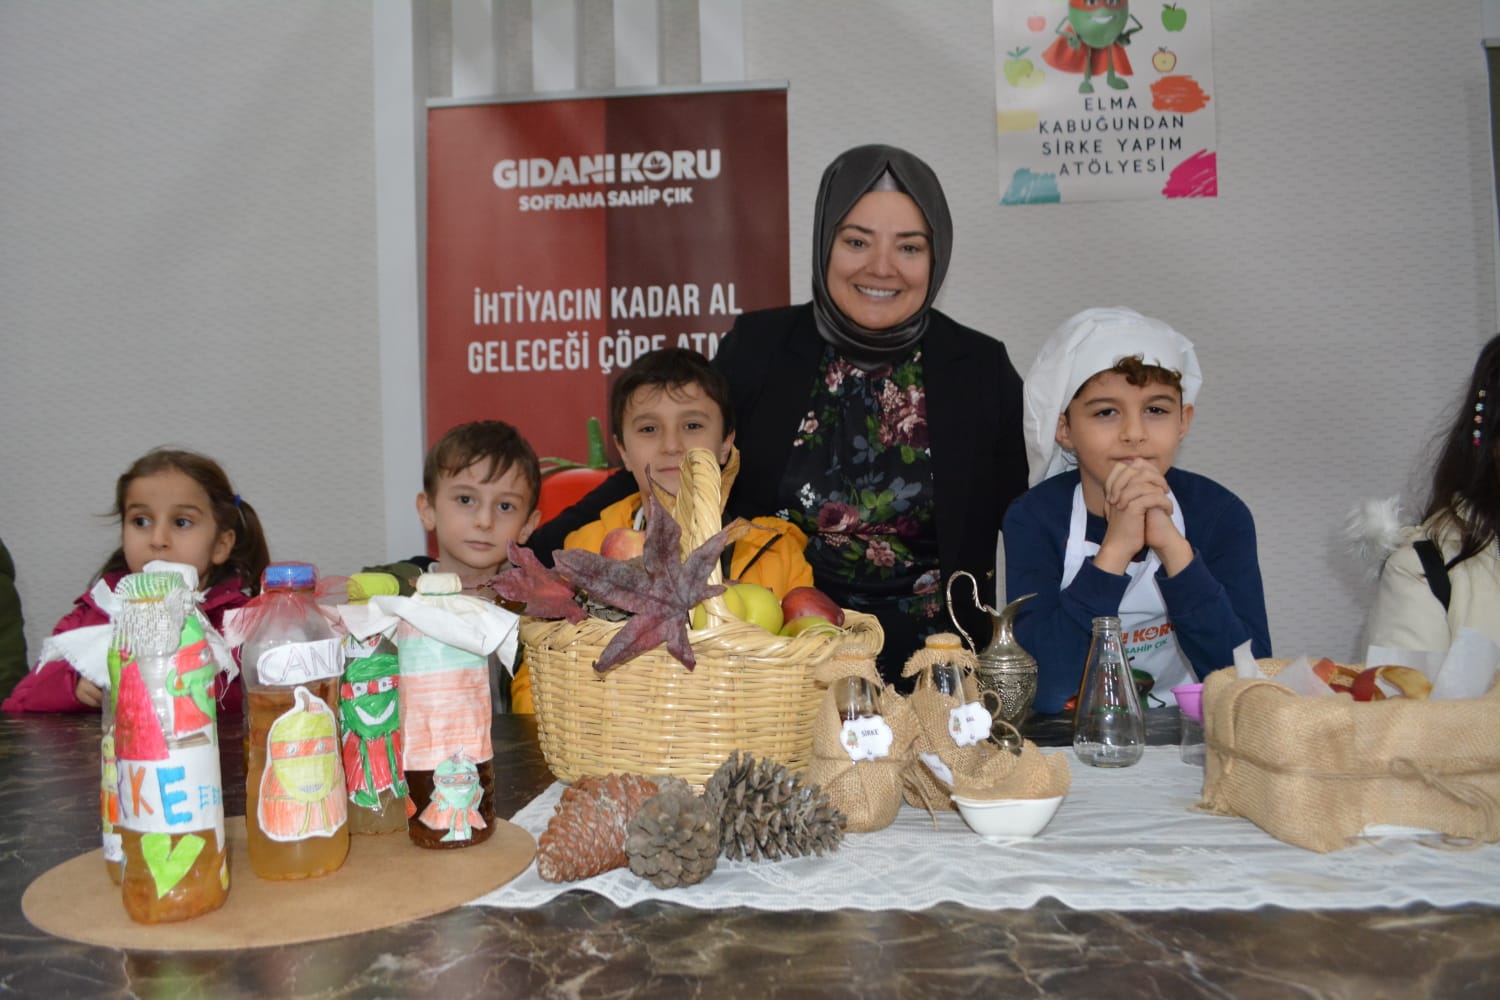 Sultanbeyli’de “Gıdanı Koru Sofrana Sahip Çık” projesi etkinlikleri